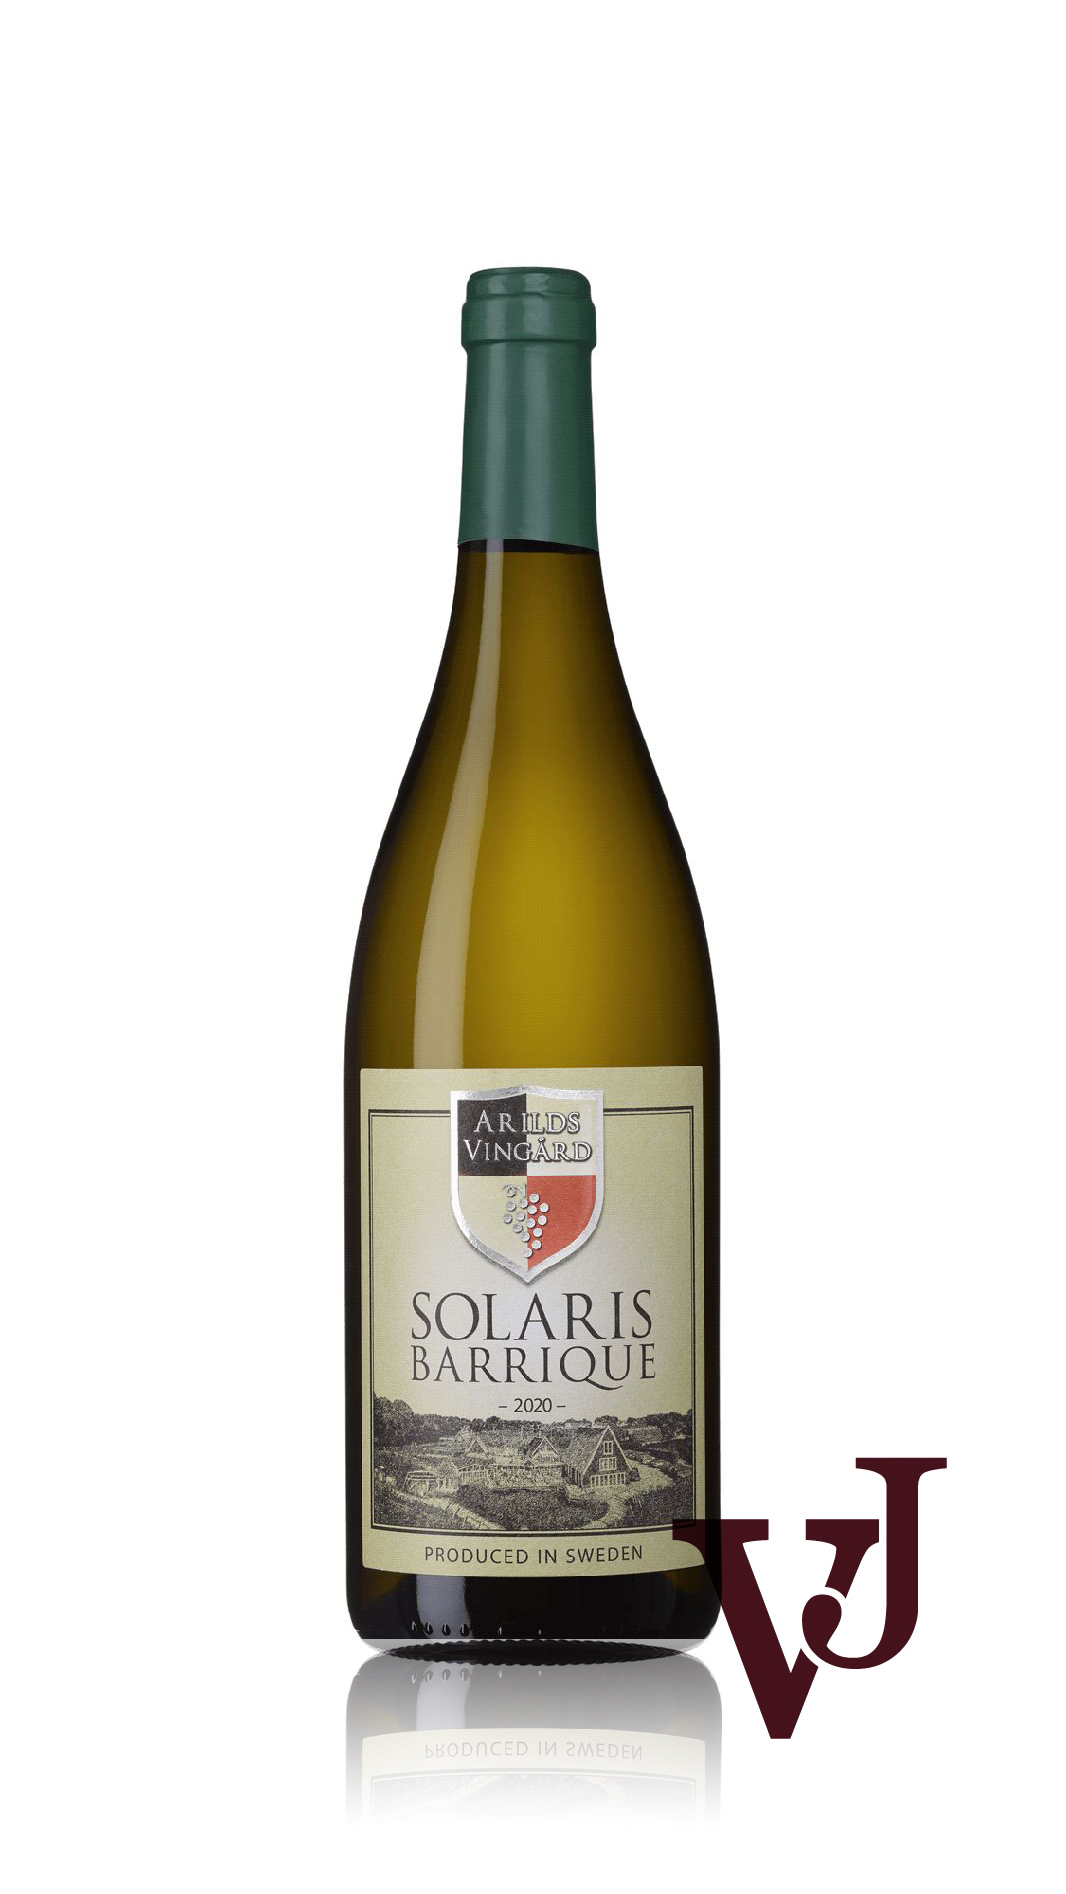 Vitt Vin - Arilds Vingård Solaris Barrique artikel nummer 3255101 från producenten Arilds vingård från området Sverige